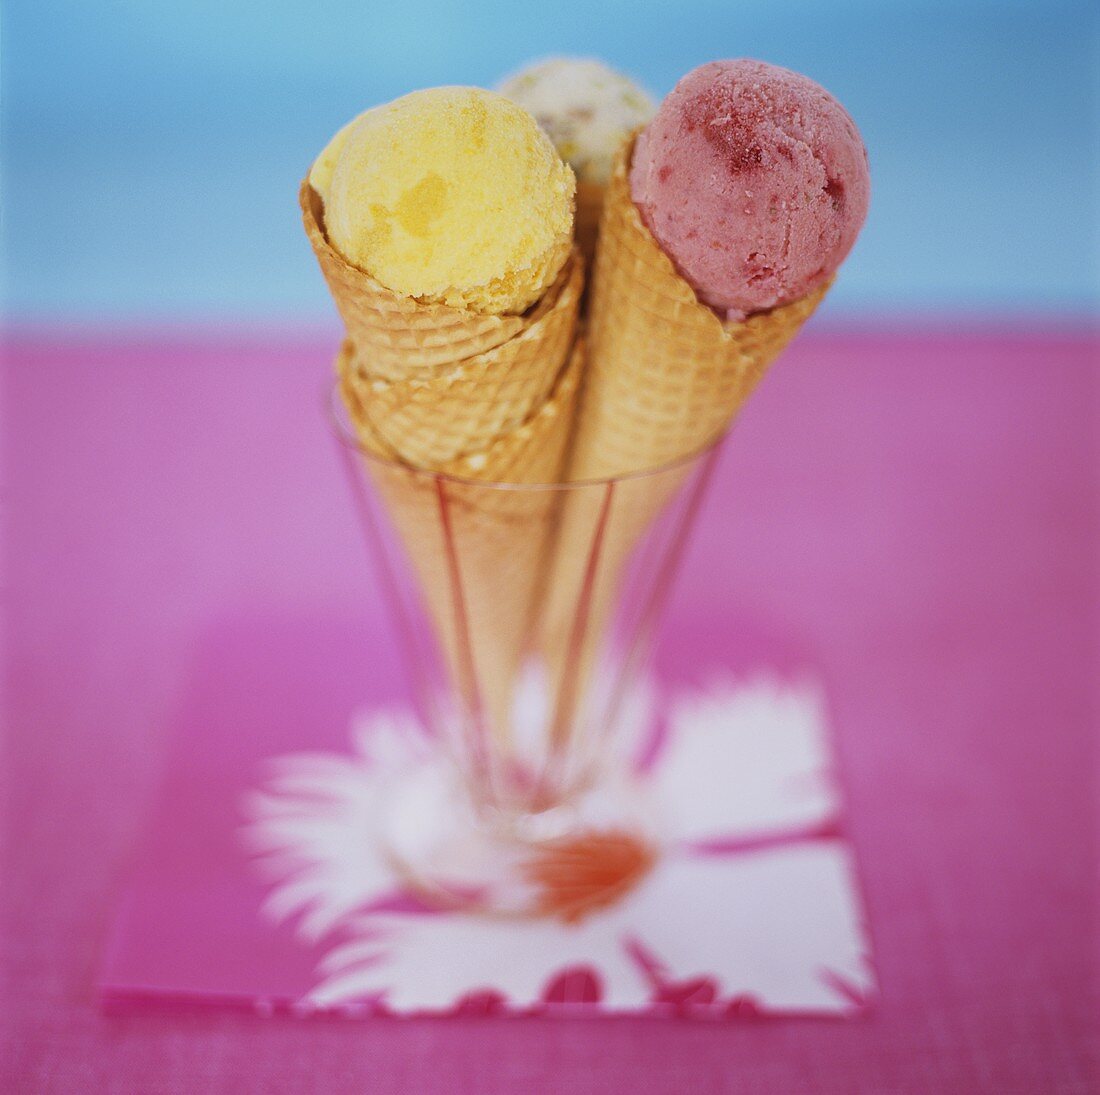 Three scoops of ice cream in three ice cream cones